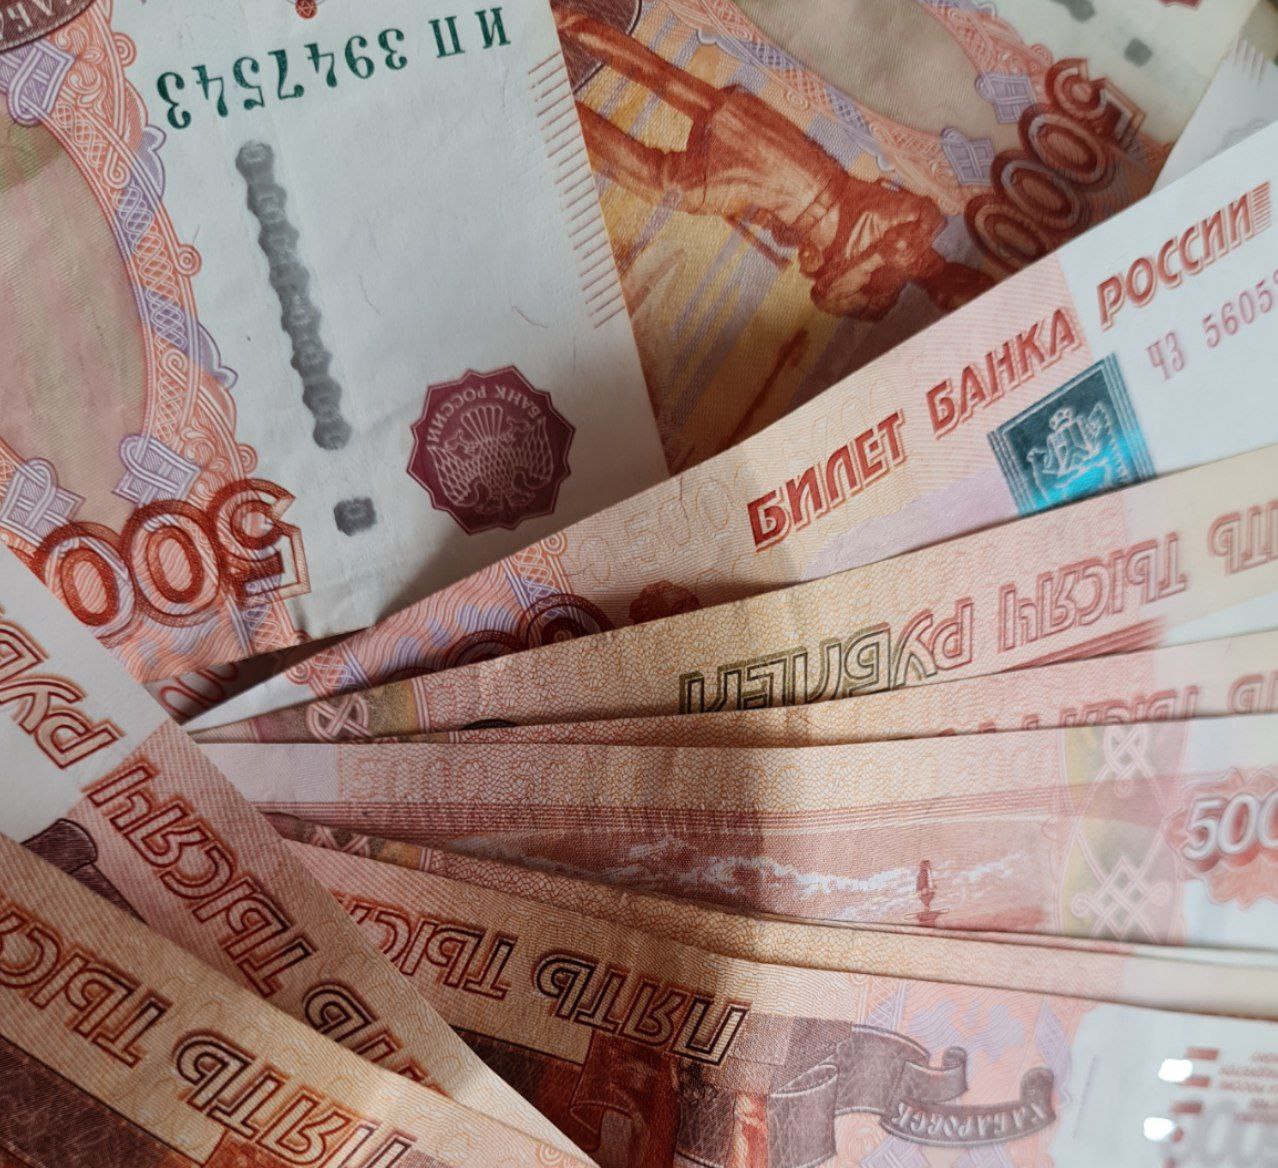 Сотрудник УФСИН передавал запрещенные предметы заключенному за 12 тысяч рублей